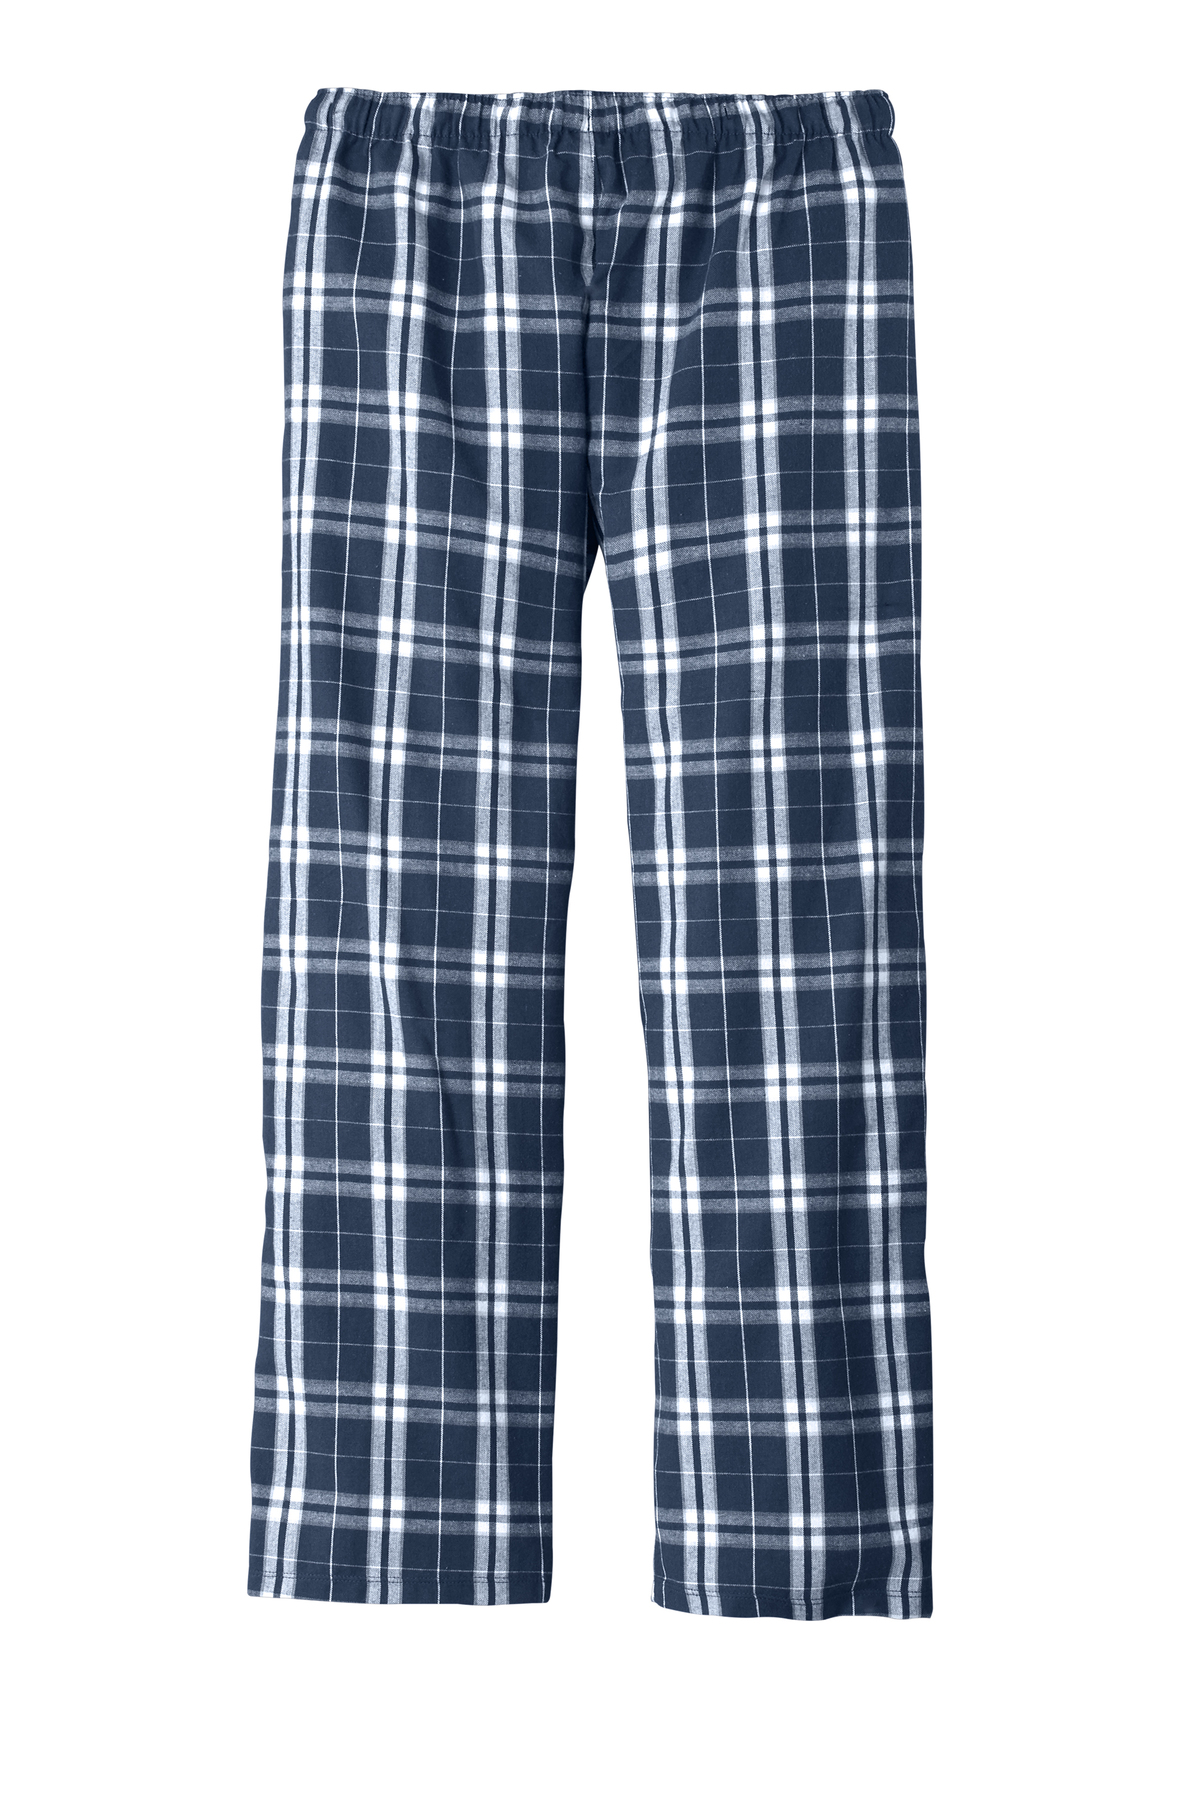 District Flannel Plaid Pant | Product | District